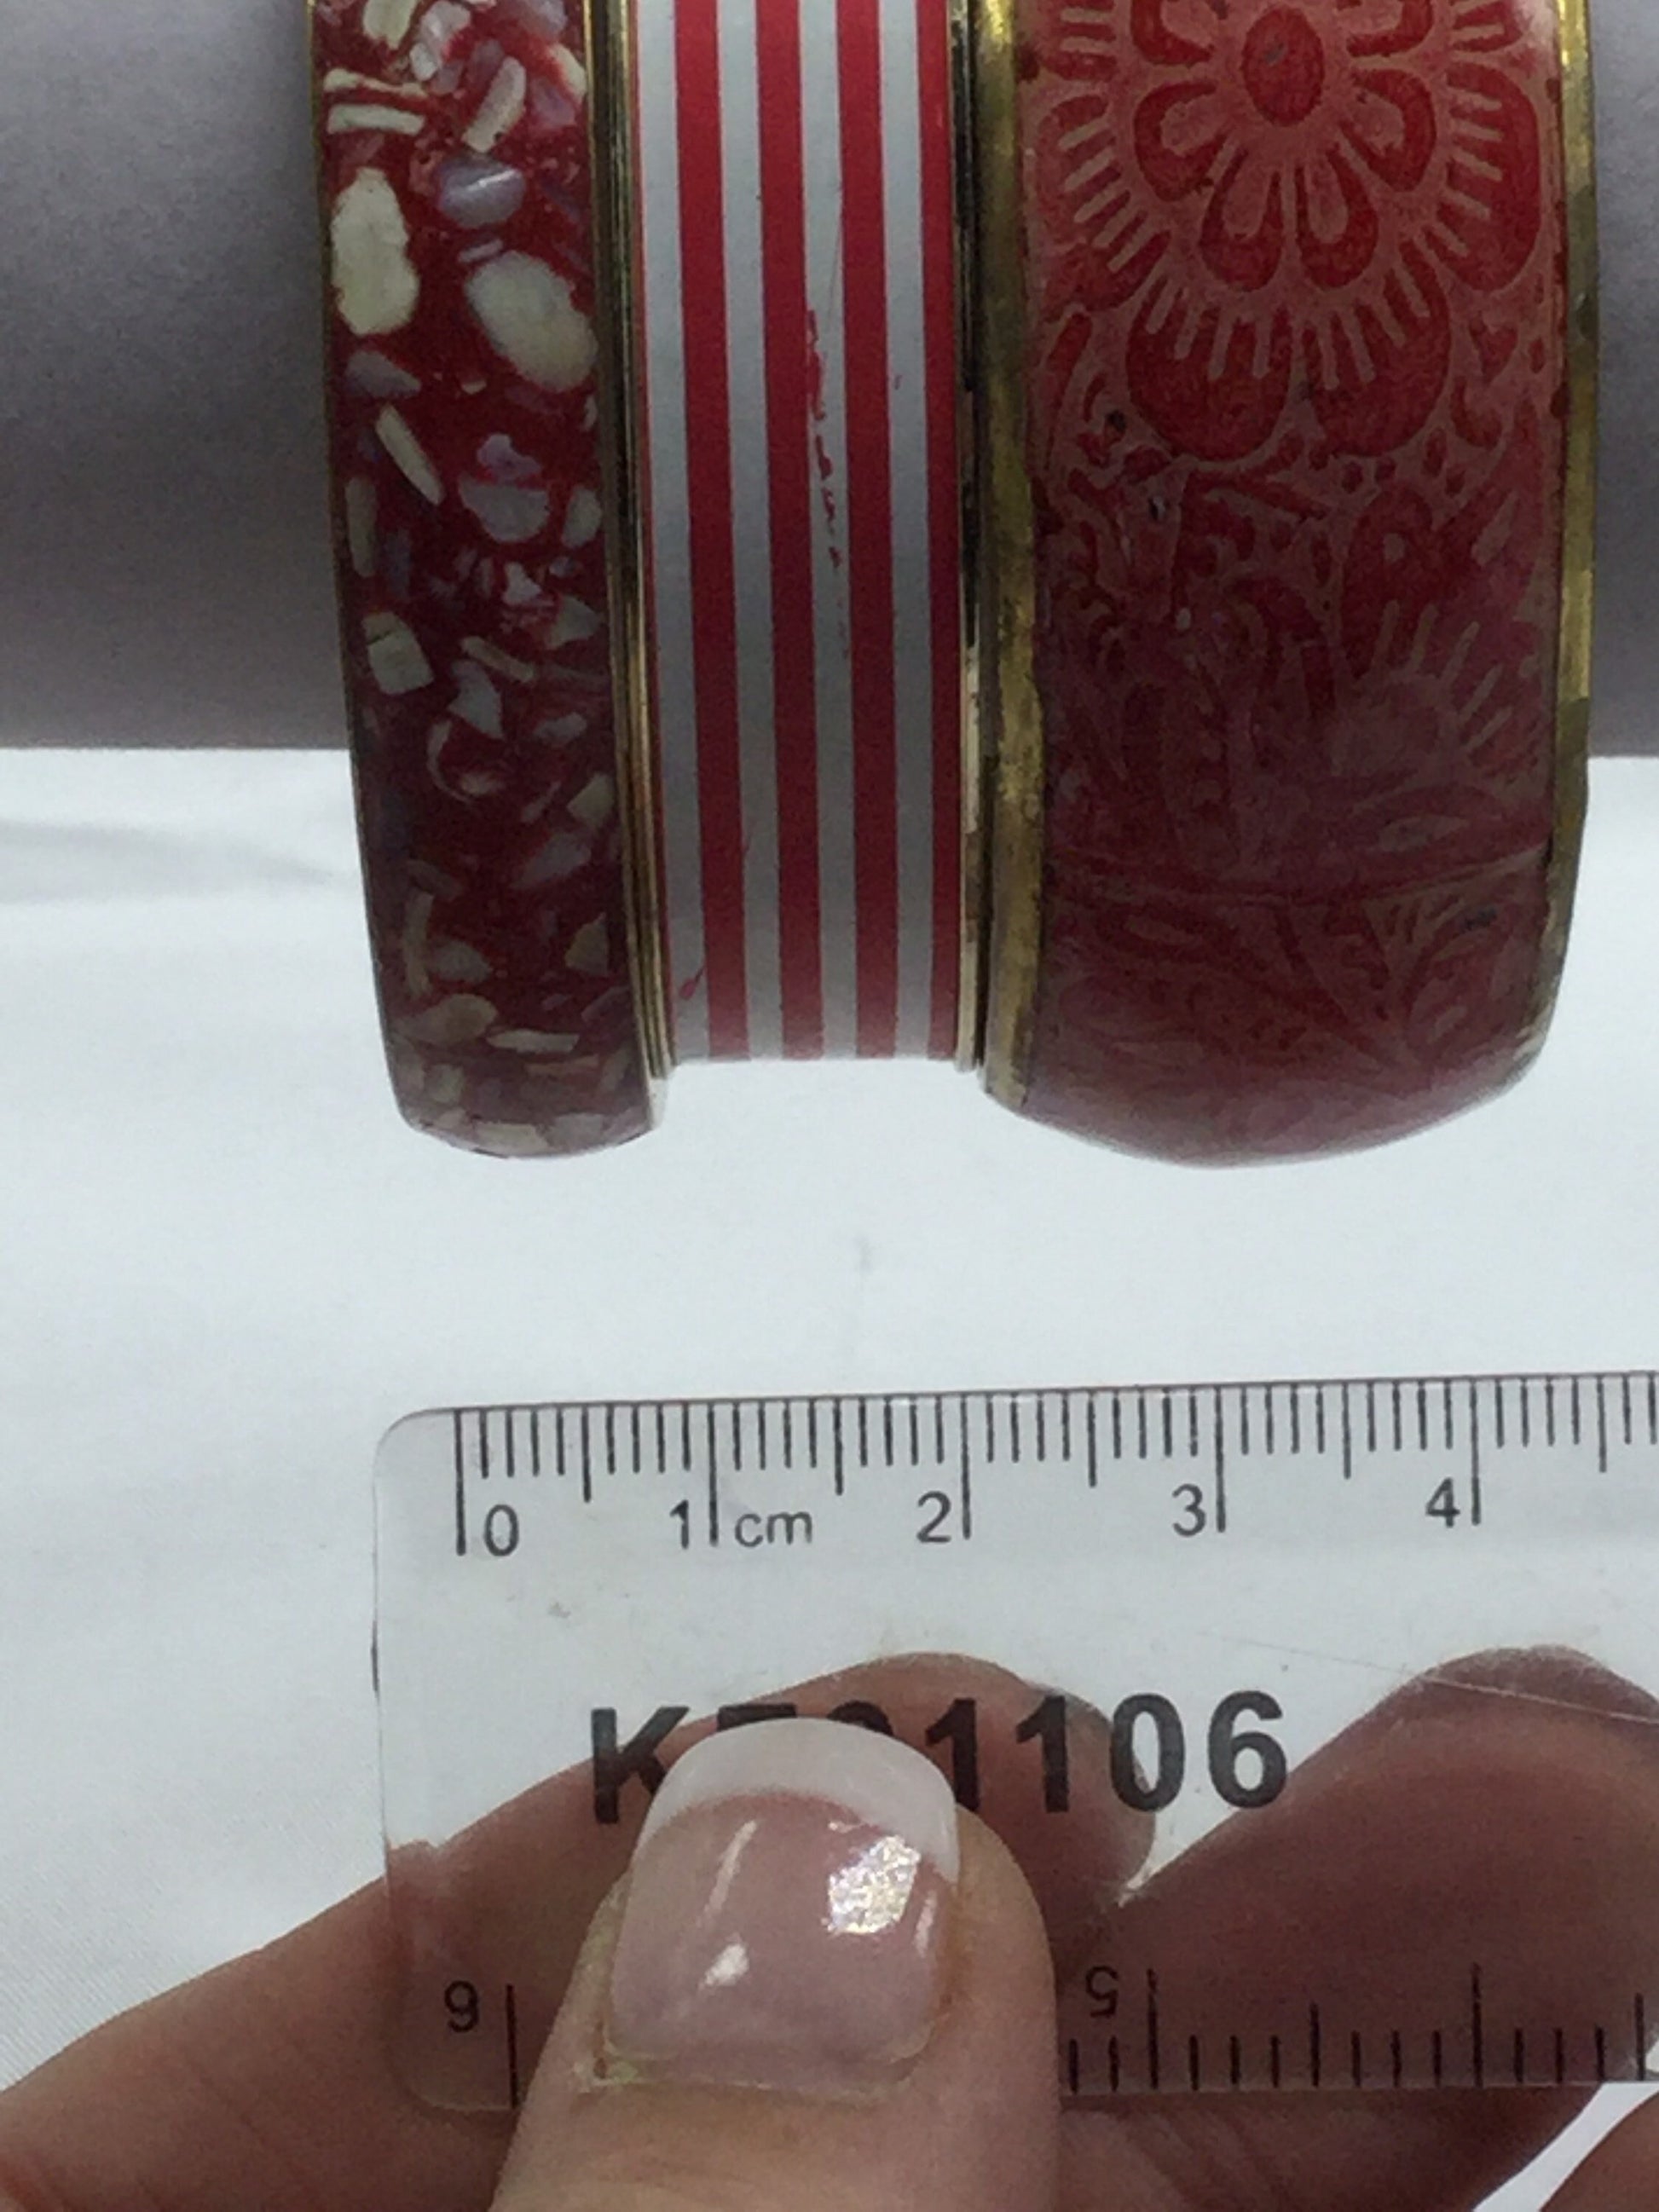 4cm wide 3 chunky vintage stacking Bangles red brass enamel metal bracelets